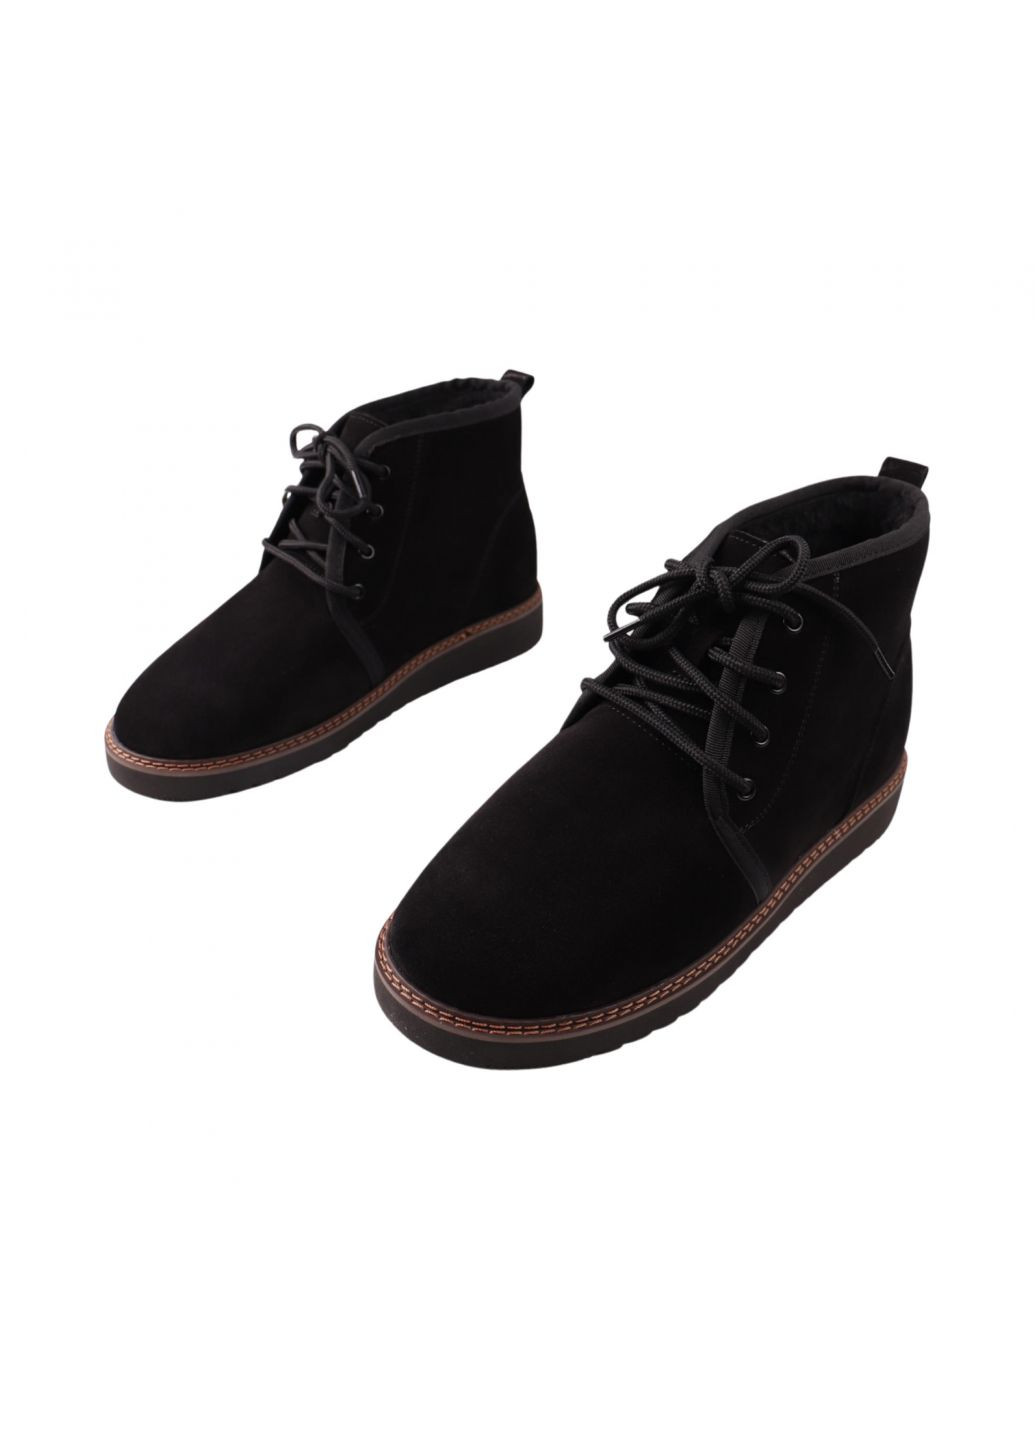 Черные ботинки мужские черные натуральная замша Vadrus